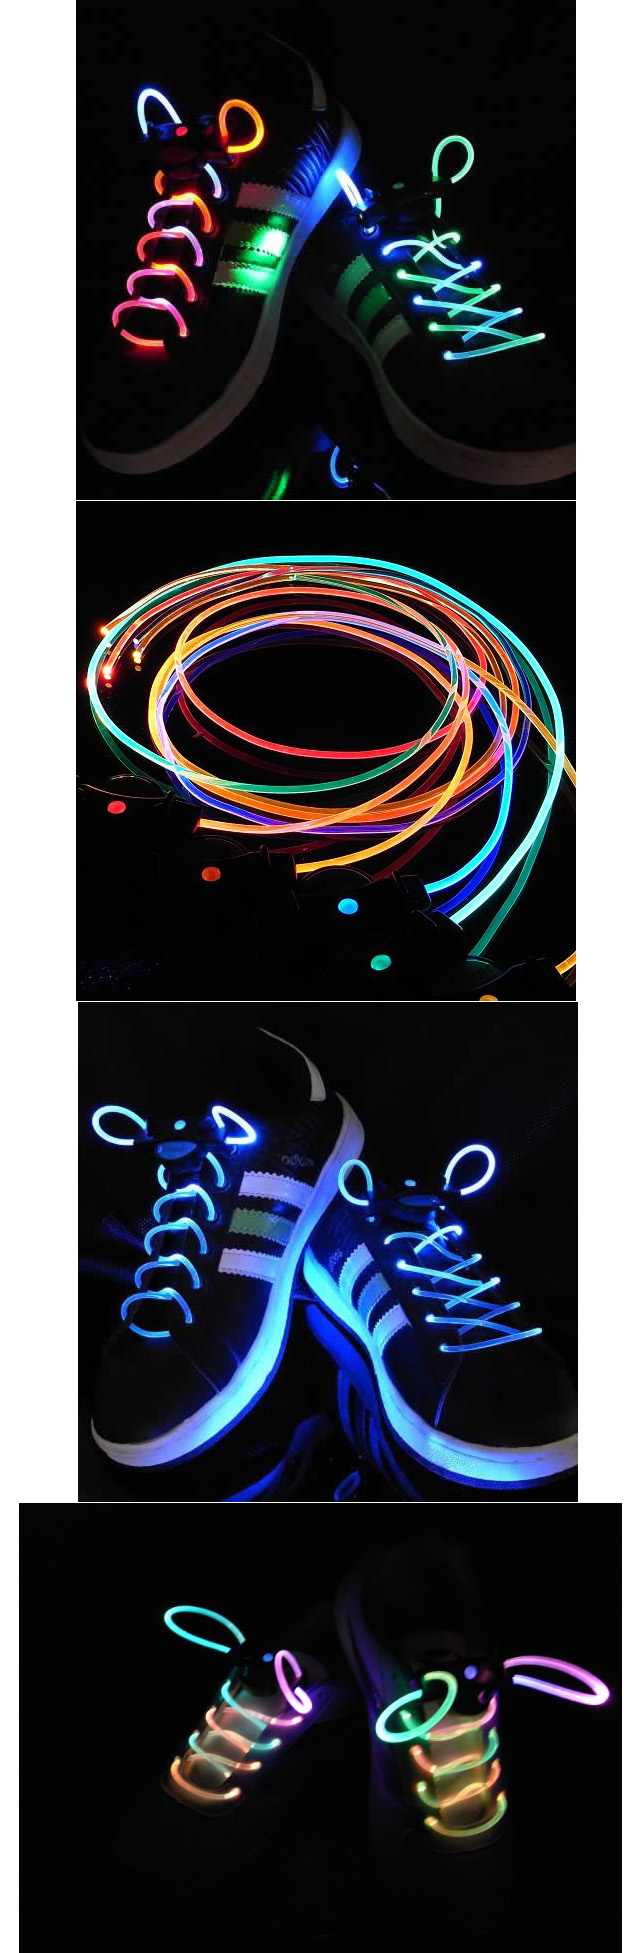 Flashing Led Shoelaces